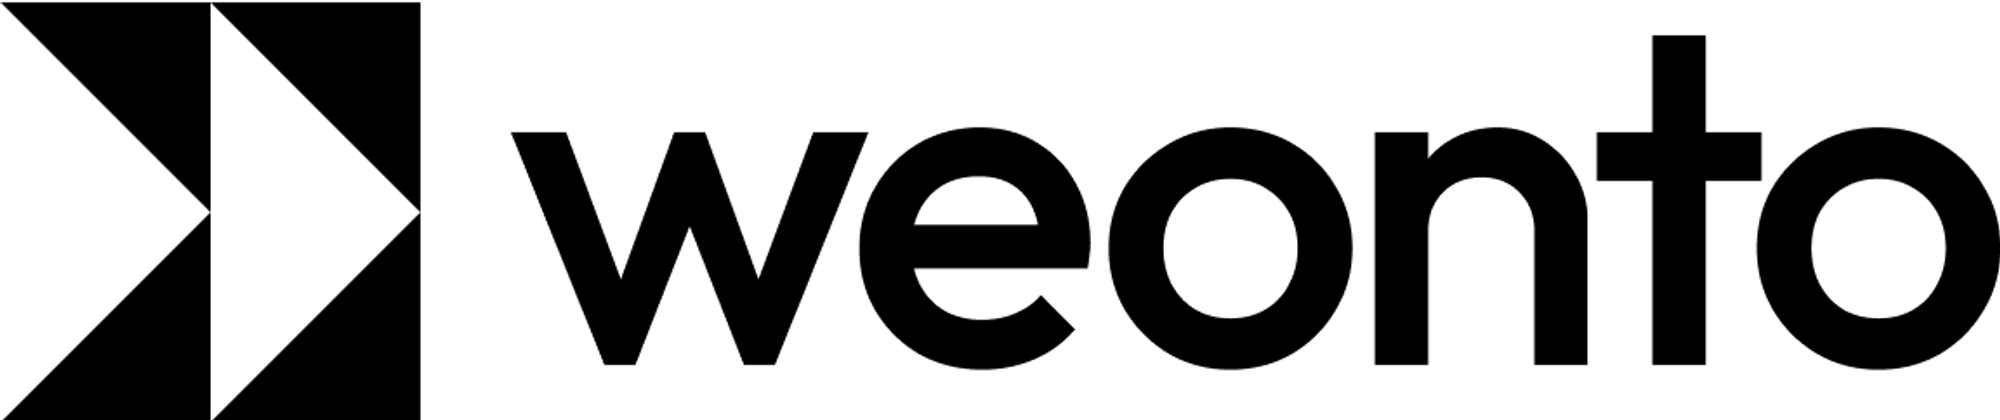 Modern logo design for weonto.com